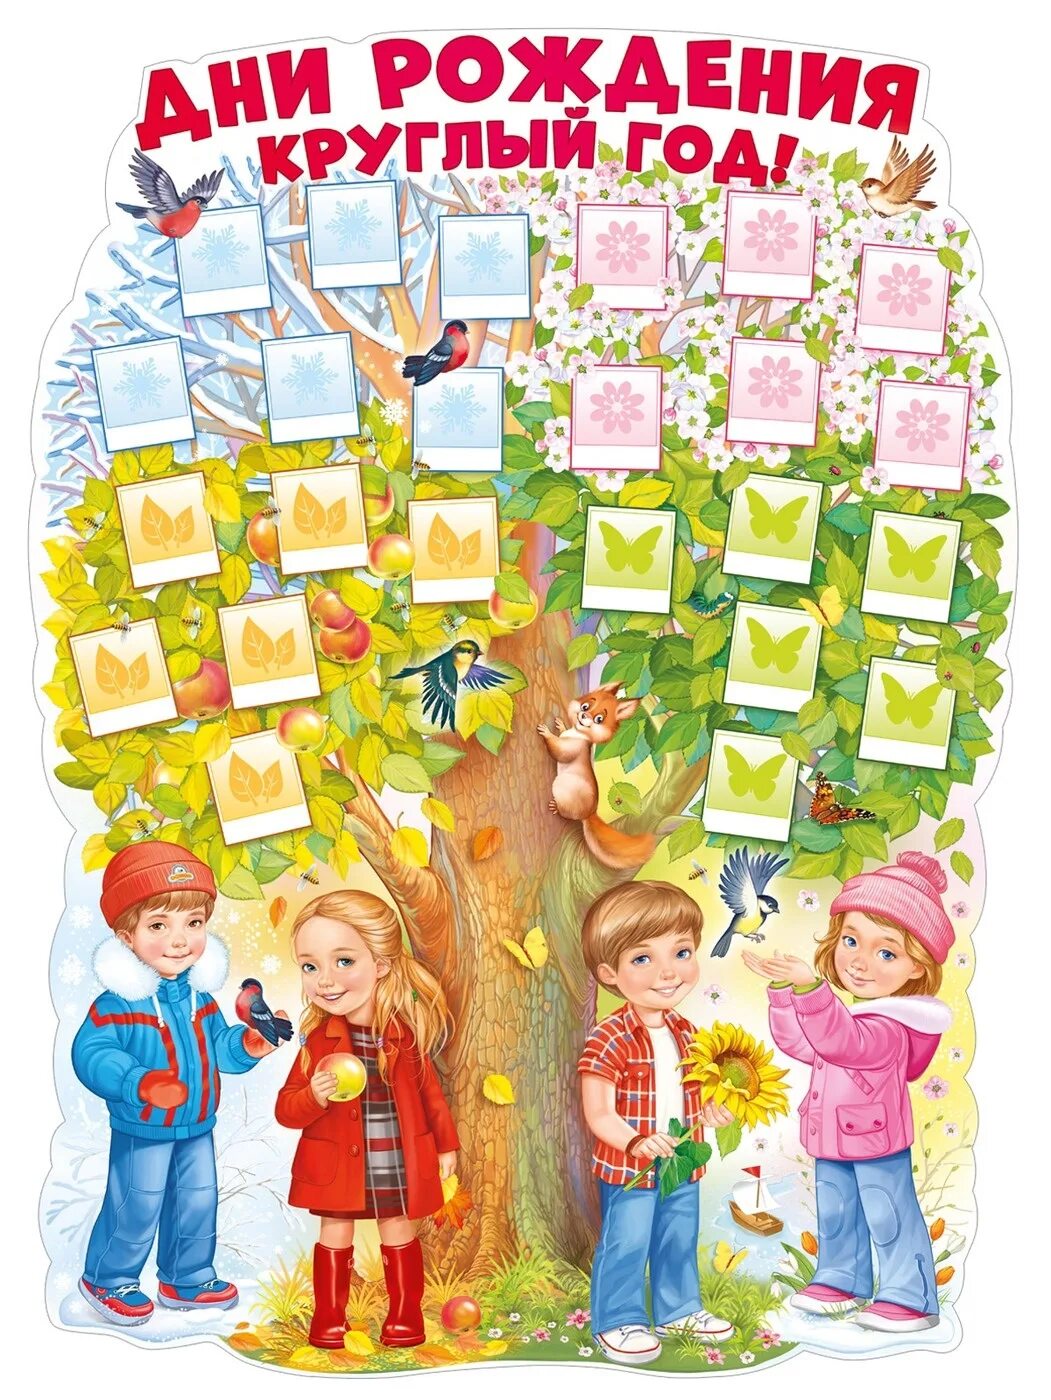 Дни рождения круглый год. Плакат дни рождения круглый год. Плакат дней рождений в саду. Дерево именинников в детском саду. День именинника плакат для детского сада.